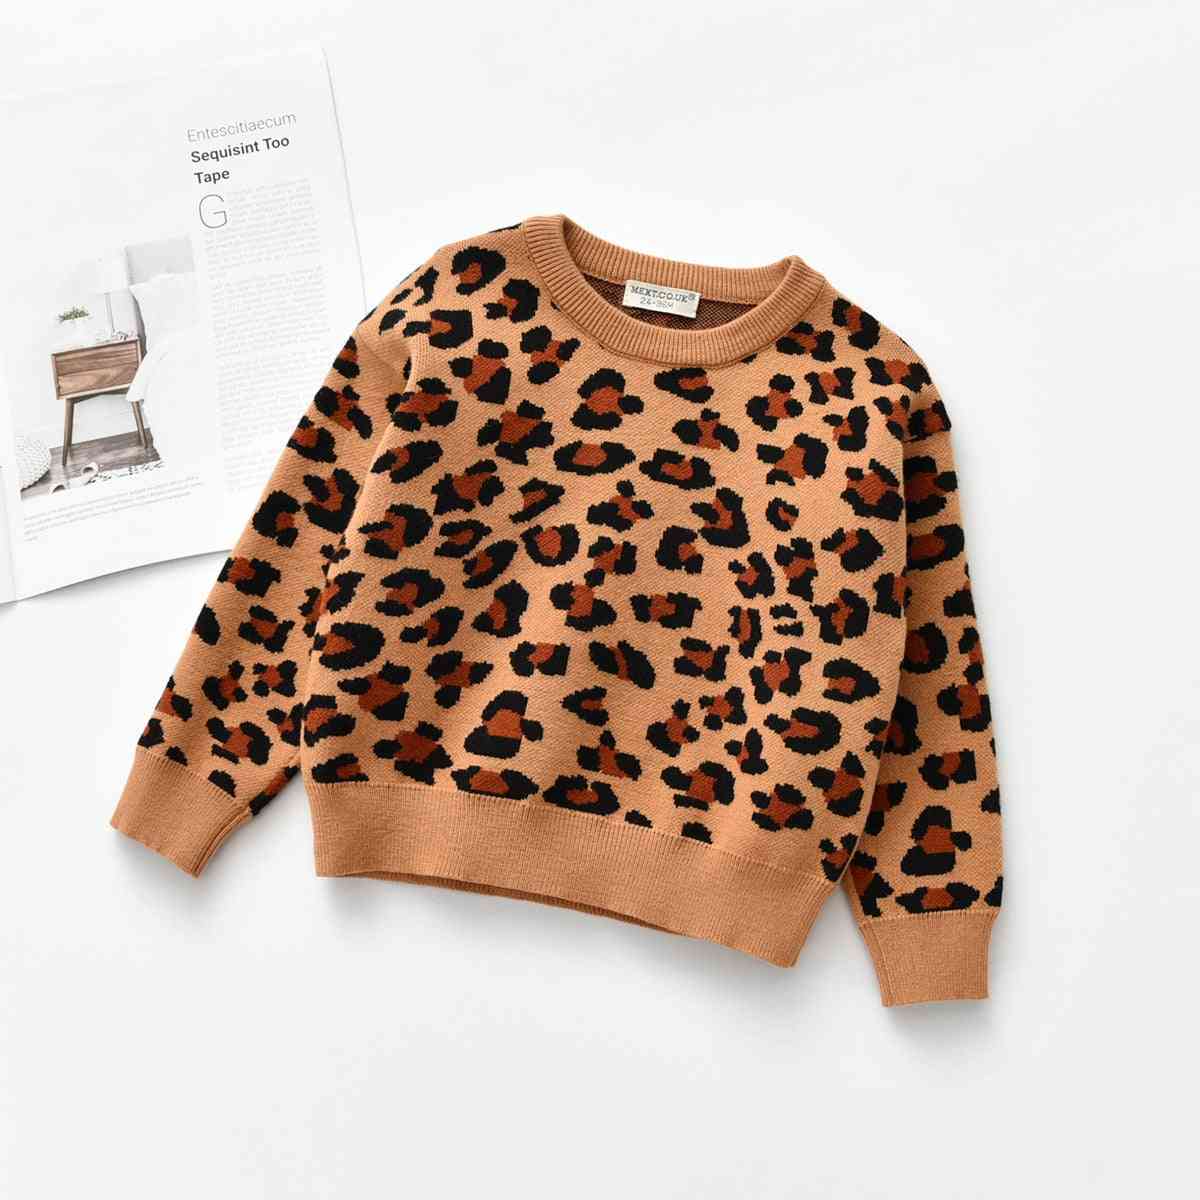 Leopardí pletený svetr pro volný čas s dlouhým rukávem, batole pro chlapce / dívku